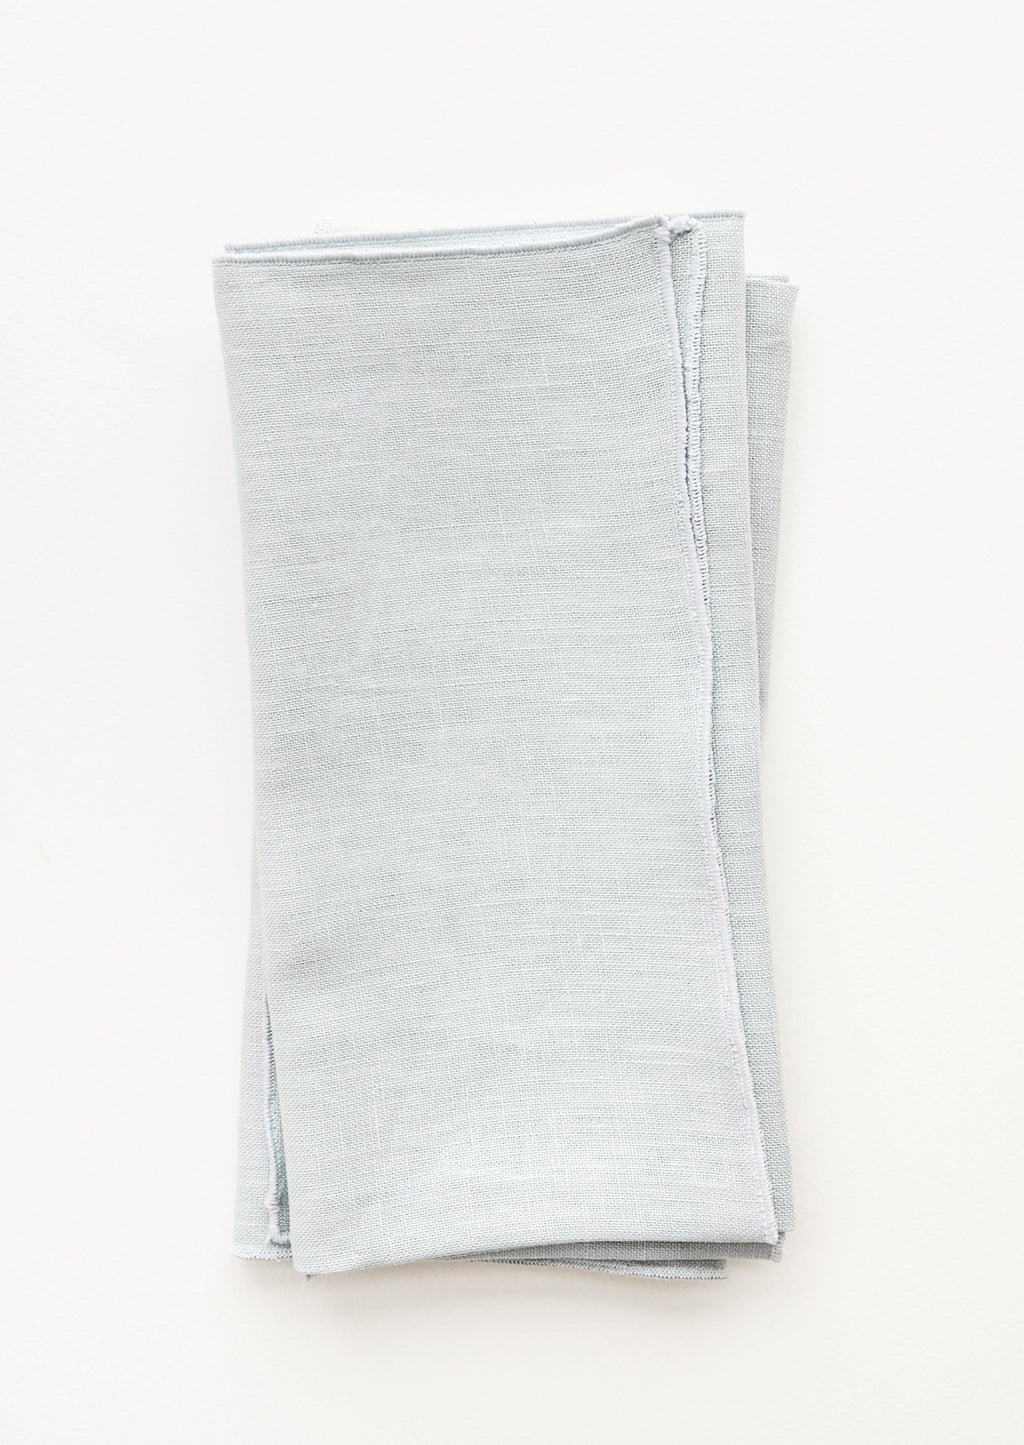 Mist: Pair of folded Linen Napkins in Misty Blue.